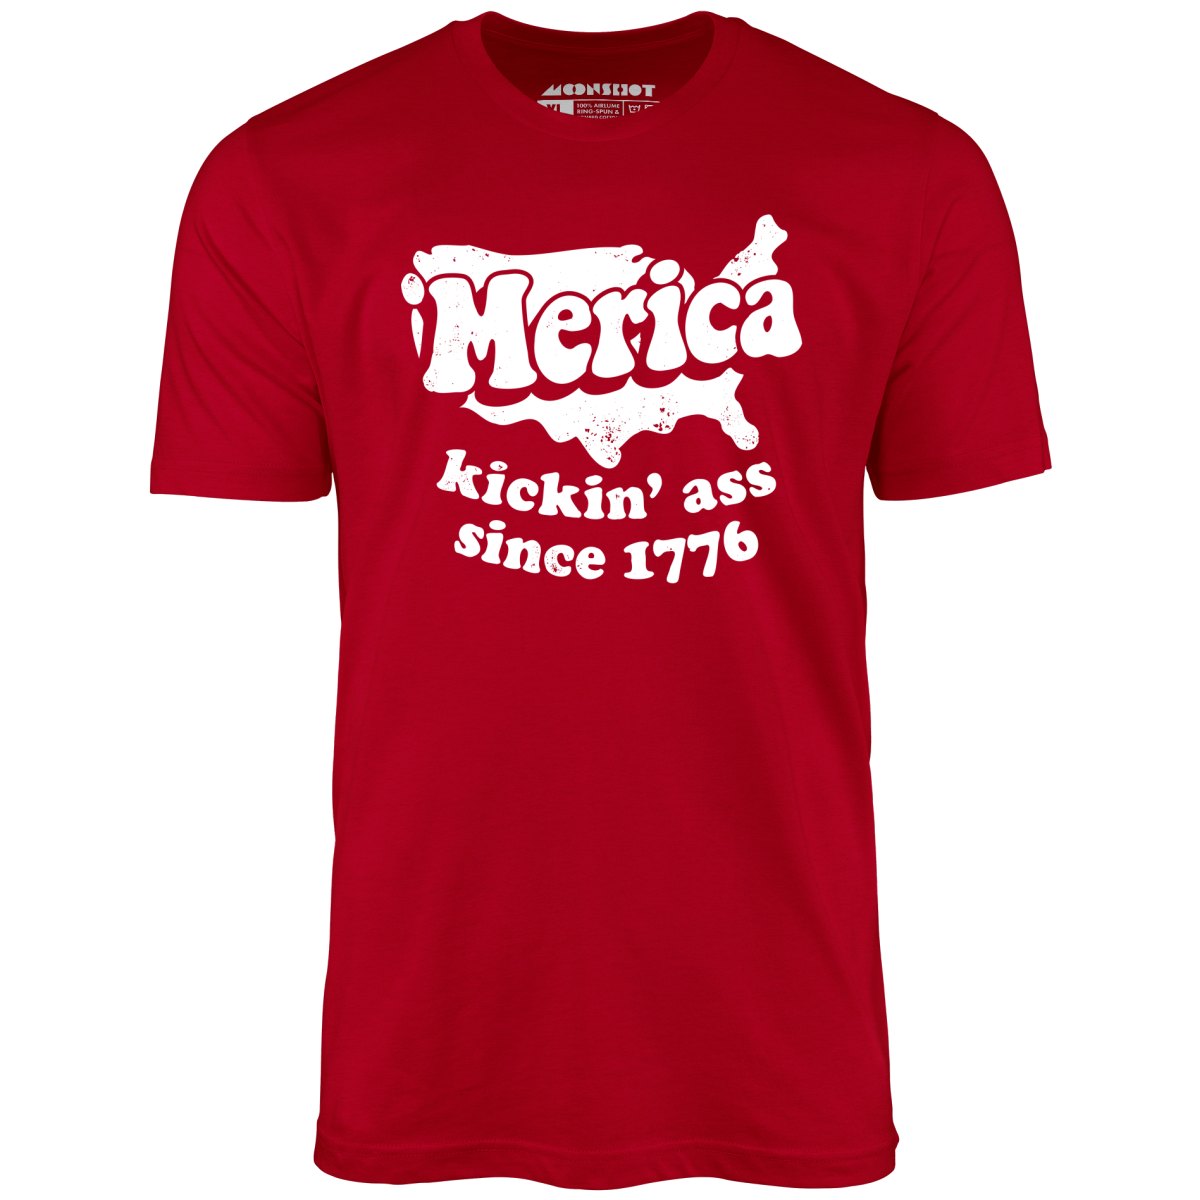 Merica Kickin' Ass Since 1776 - Unisex T-Shirt